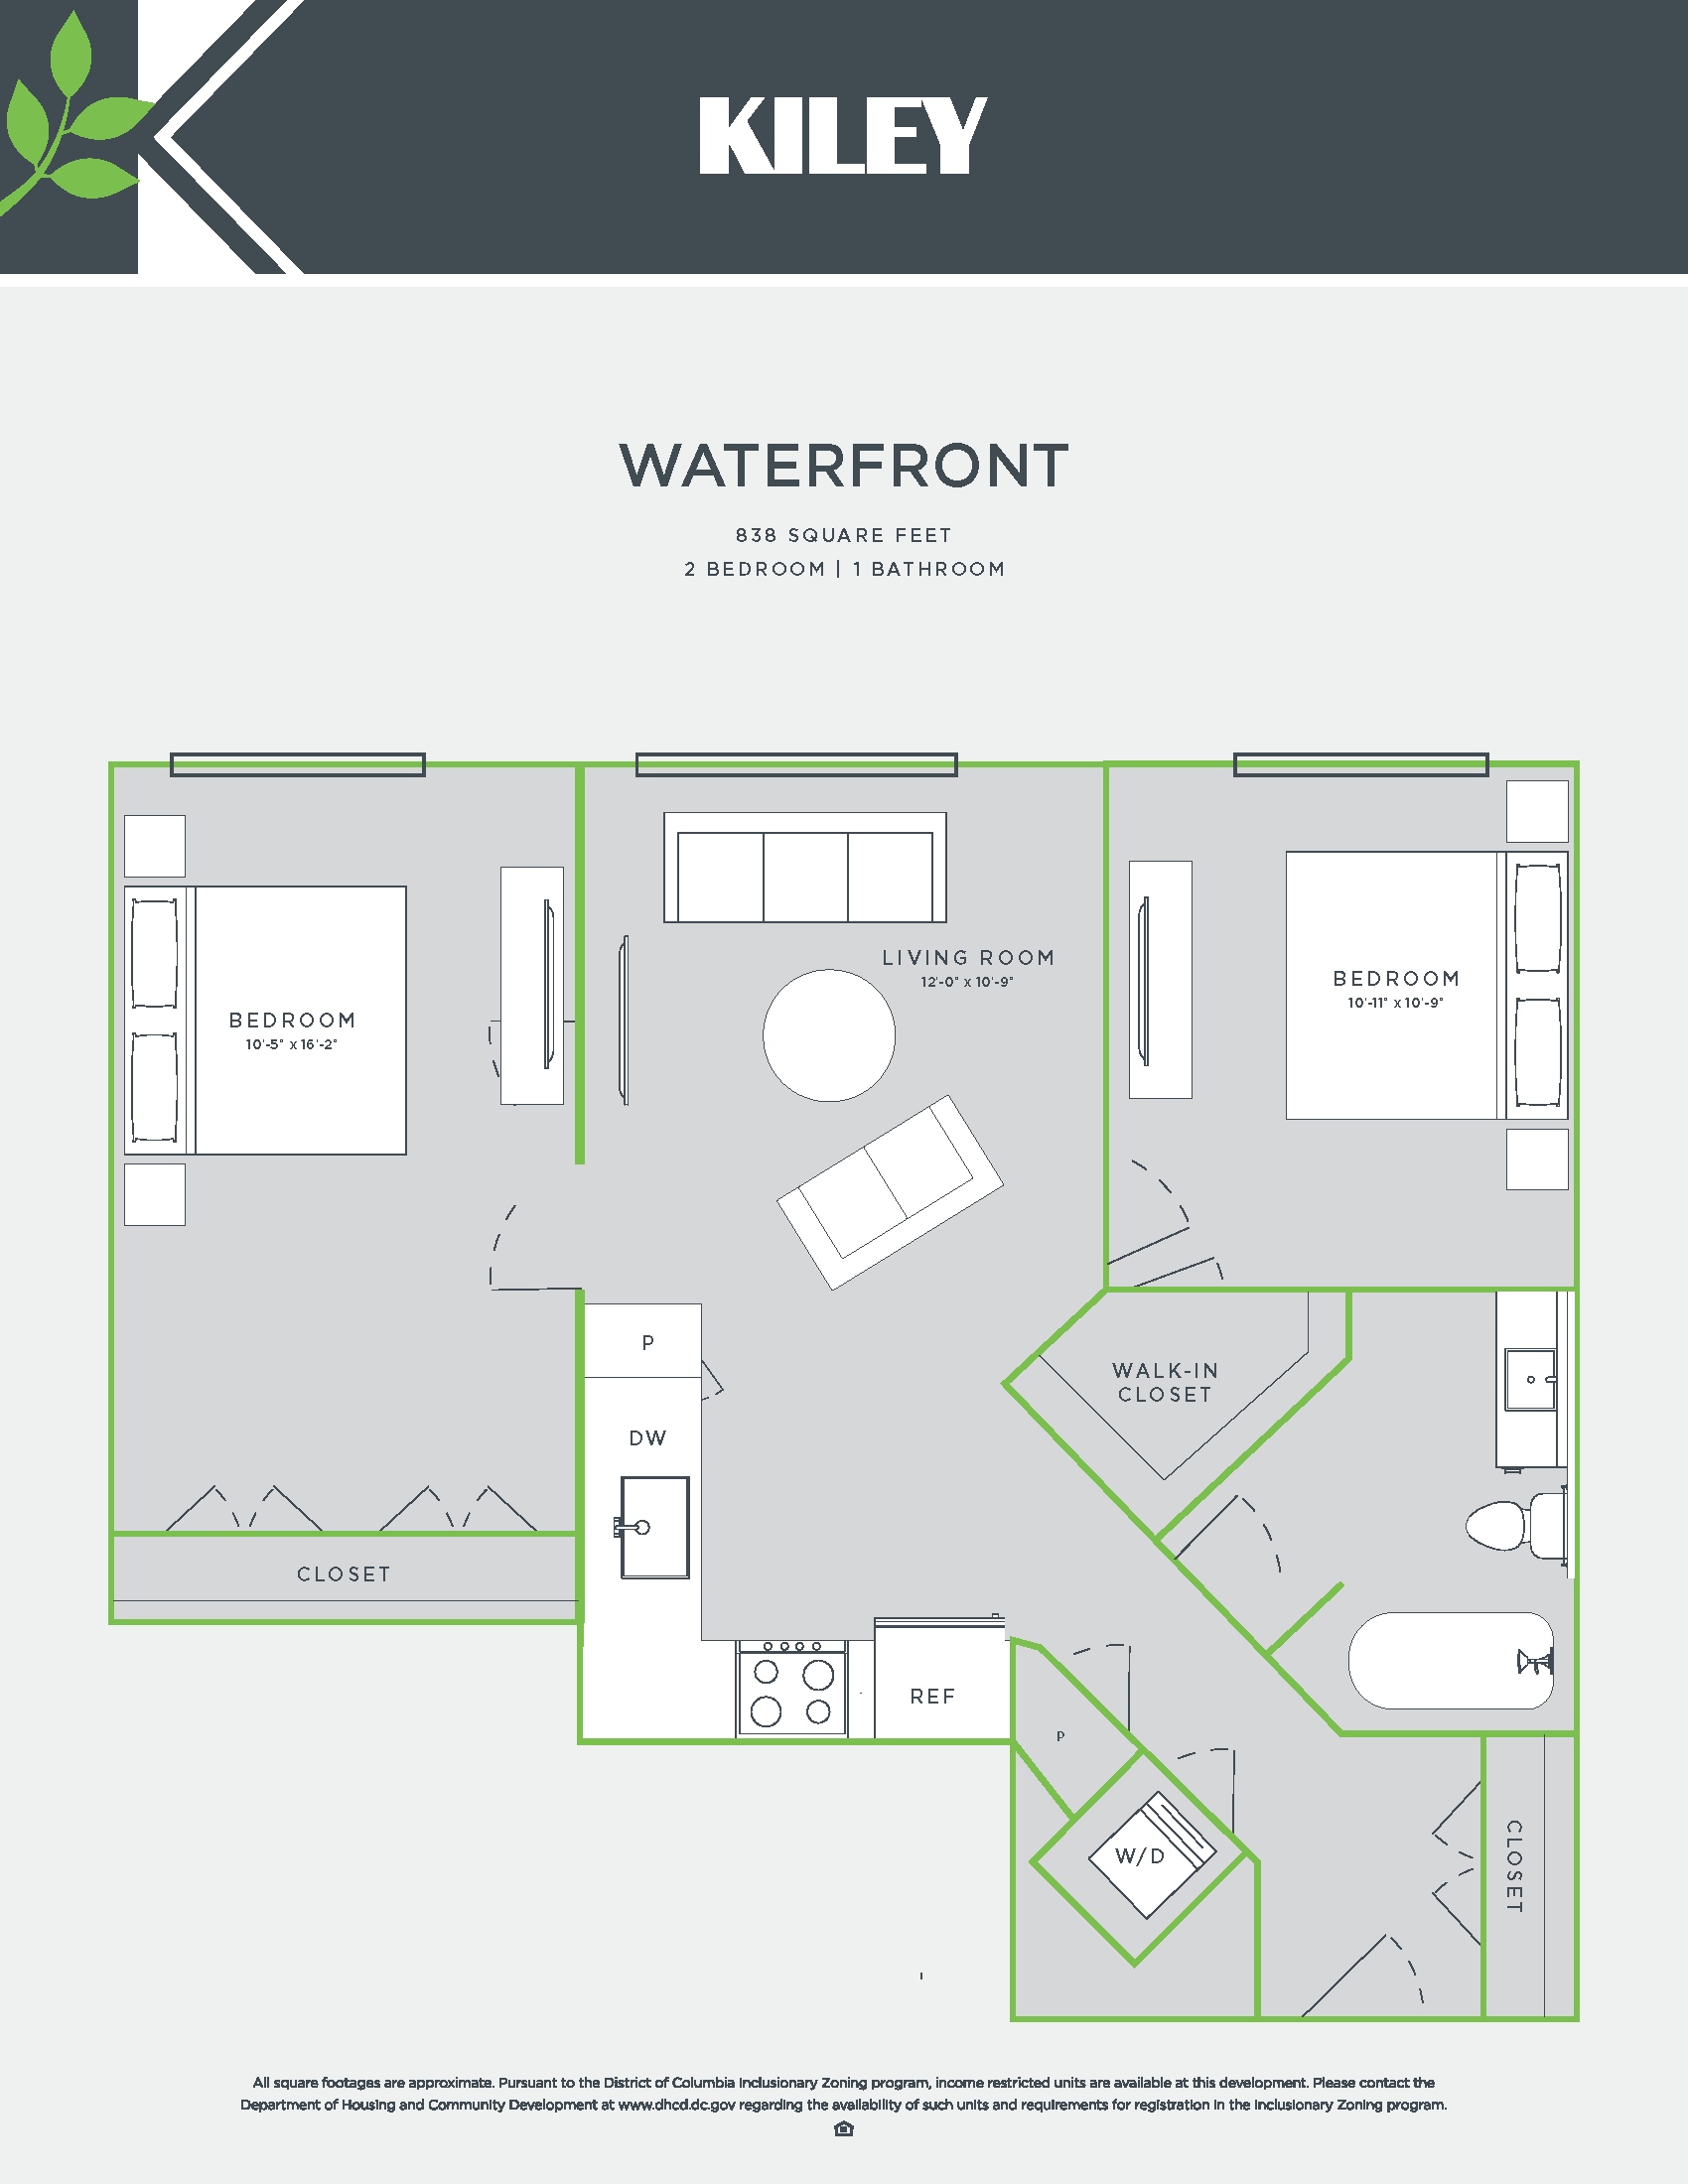 Waterfront (2 bed /1 bath) Floor Plan